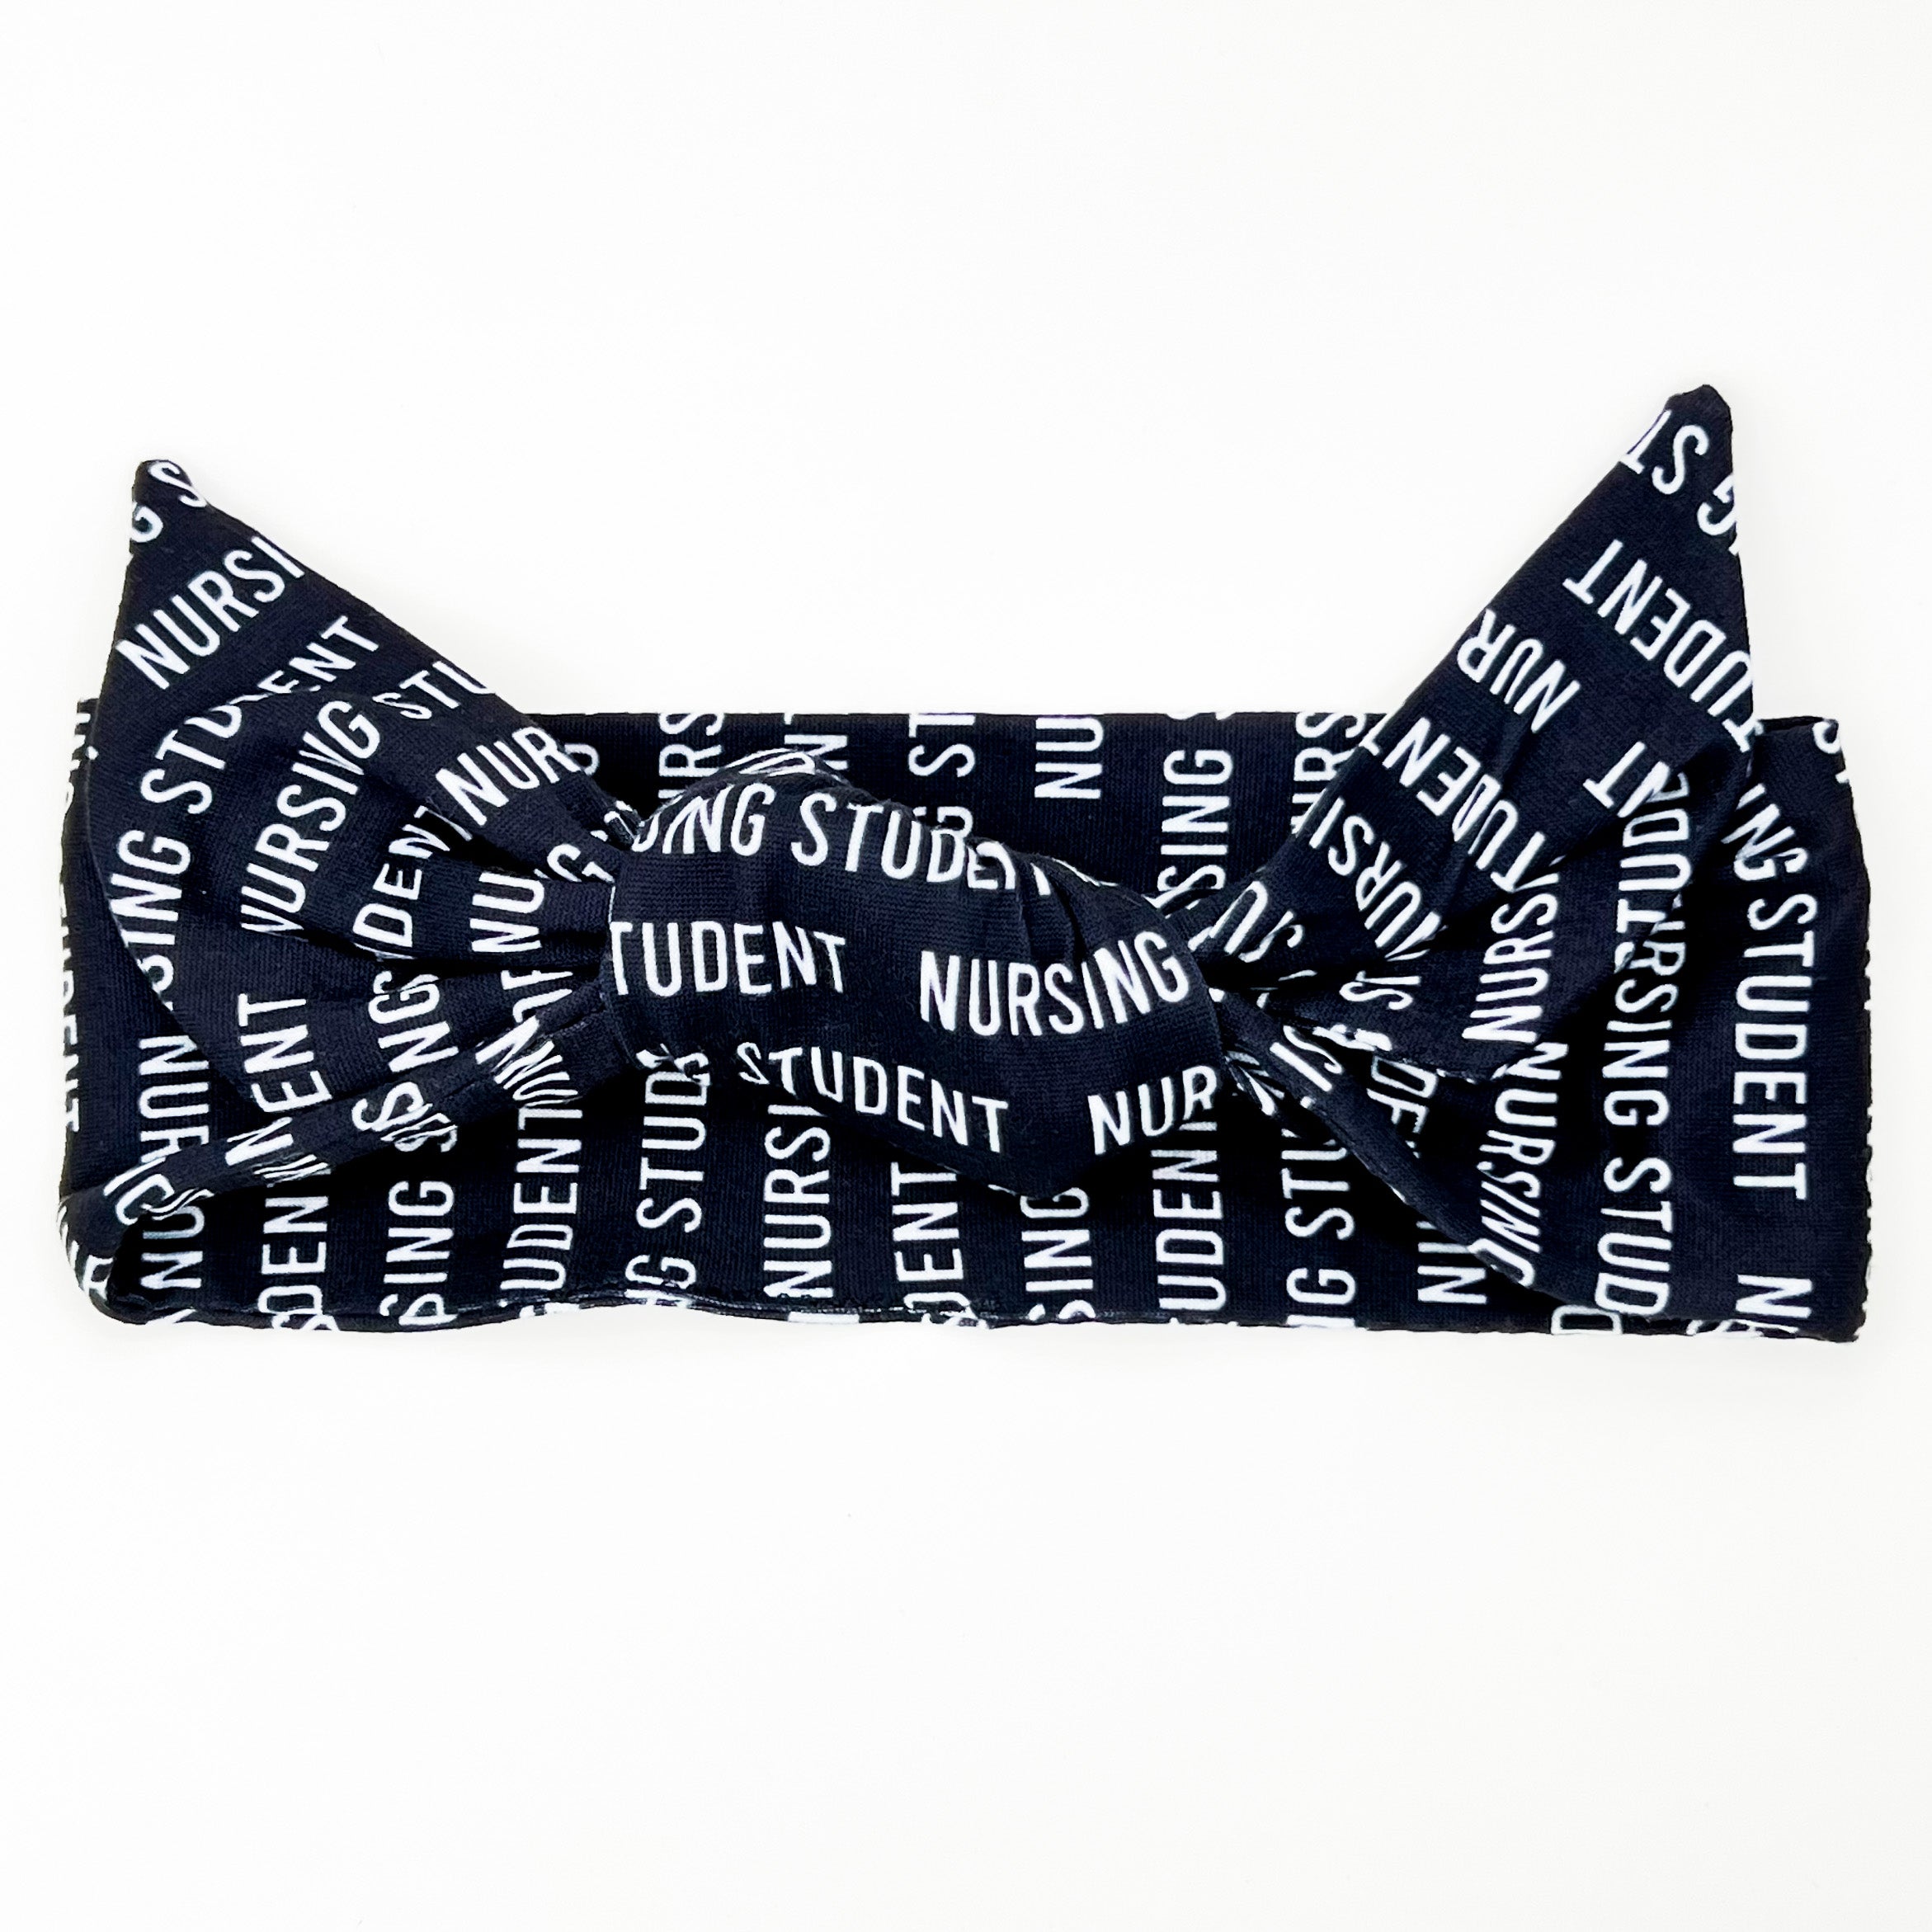 Nursing Student Adjustable Tie Headband